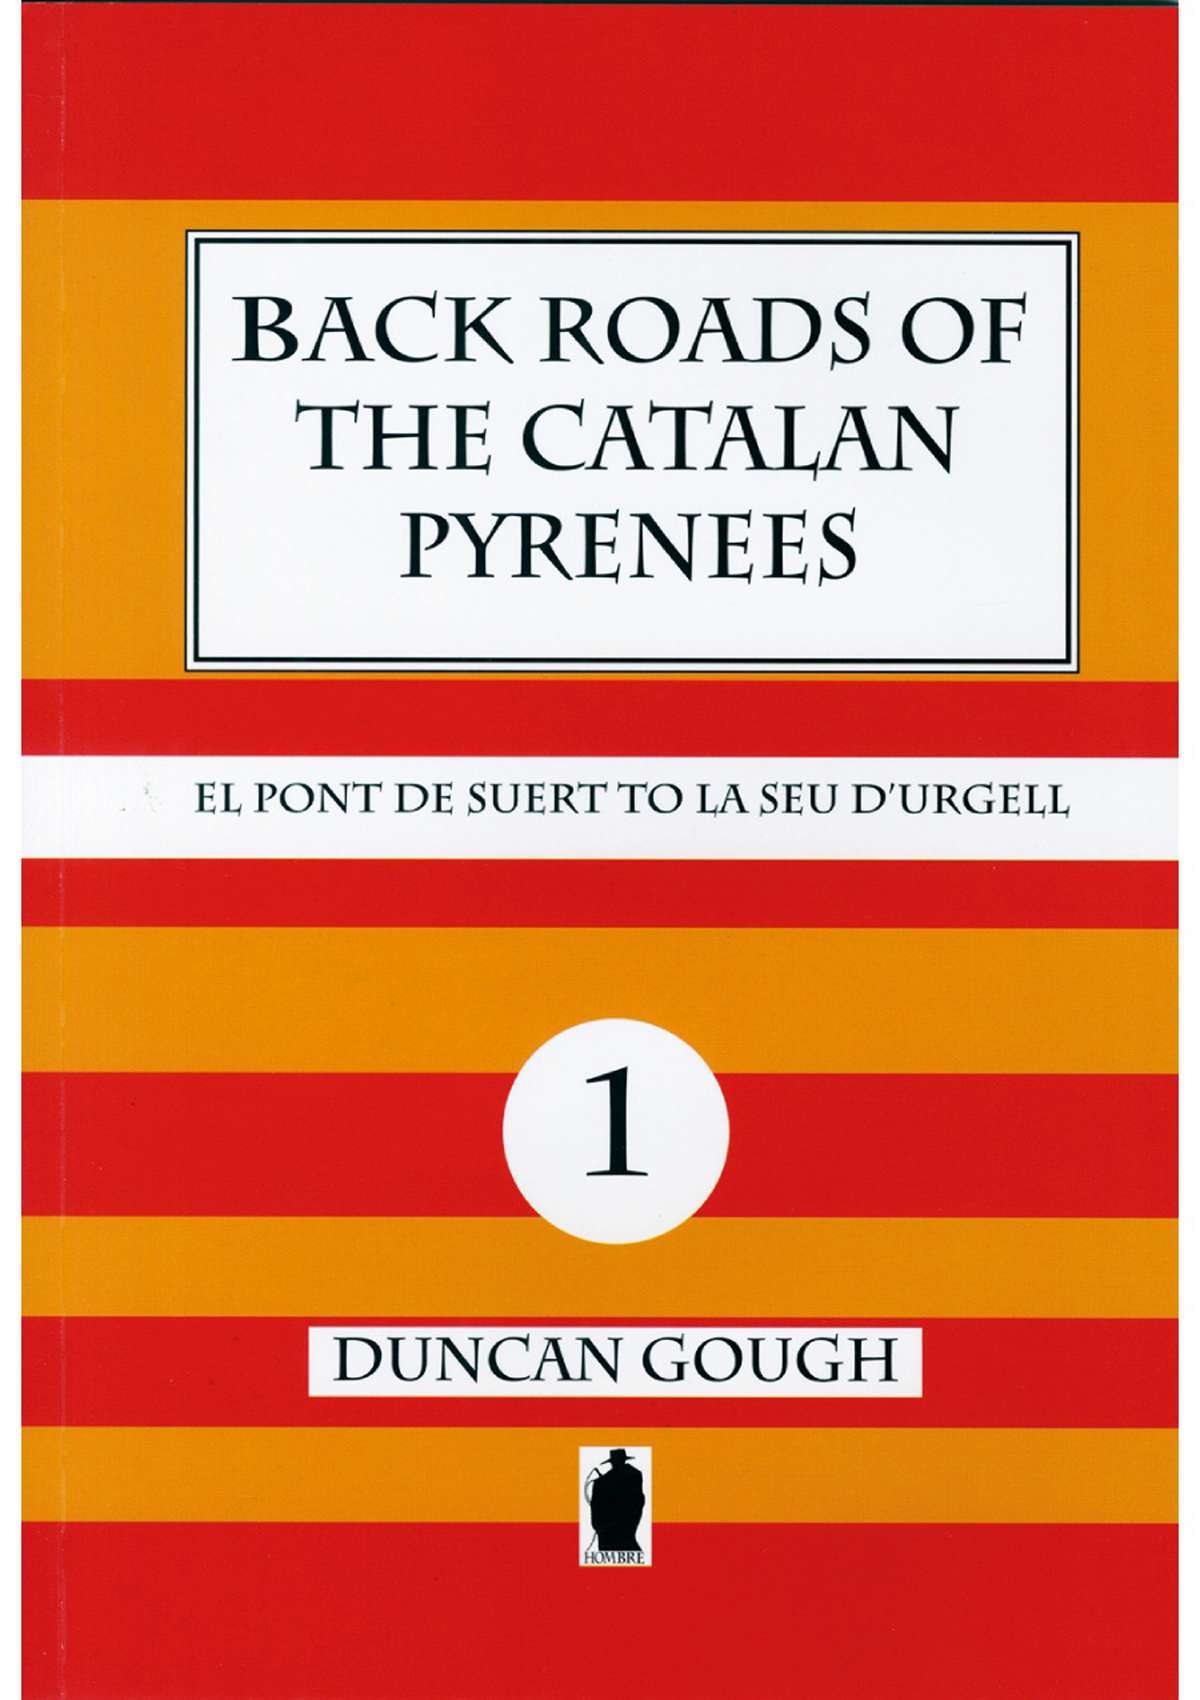 Back Roads of the Catalan Pyrenees - 1- El Pont de Suert to La Seu D'Urgell